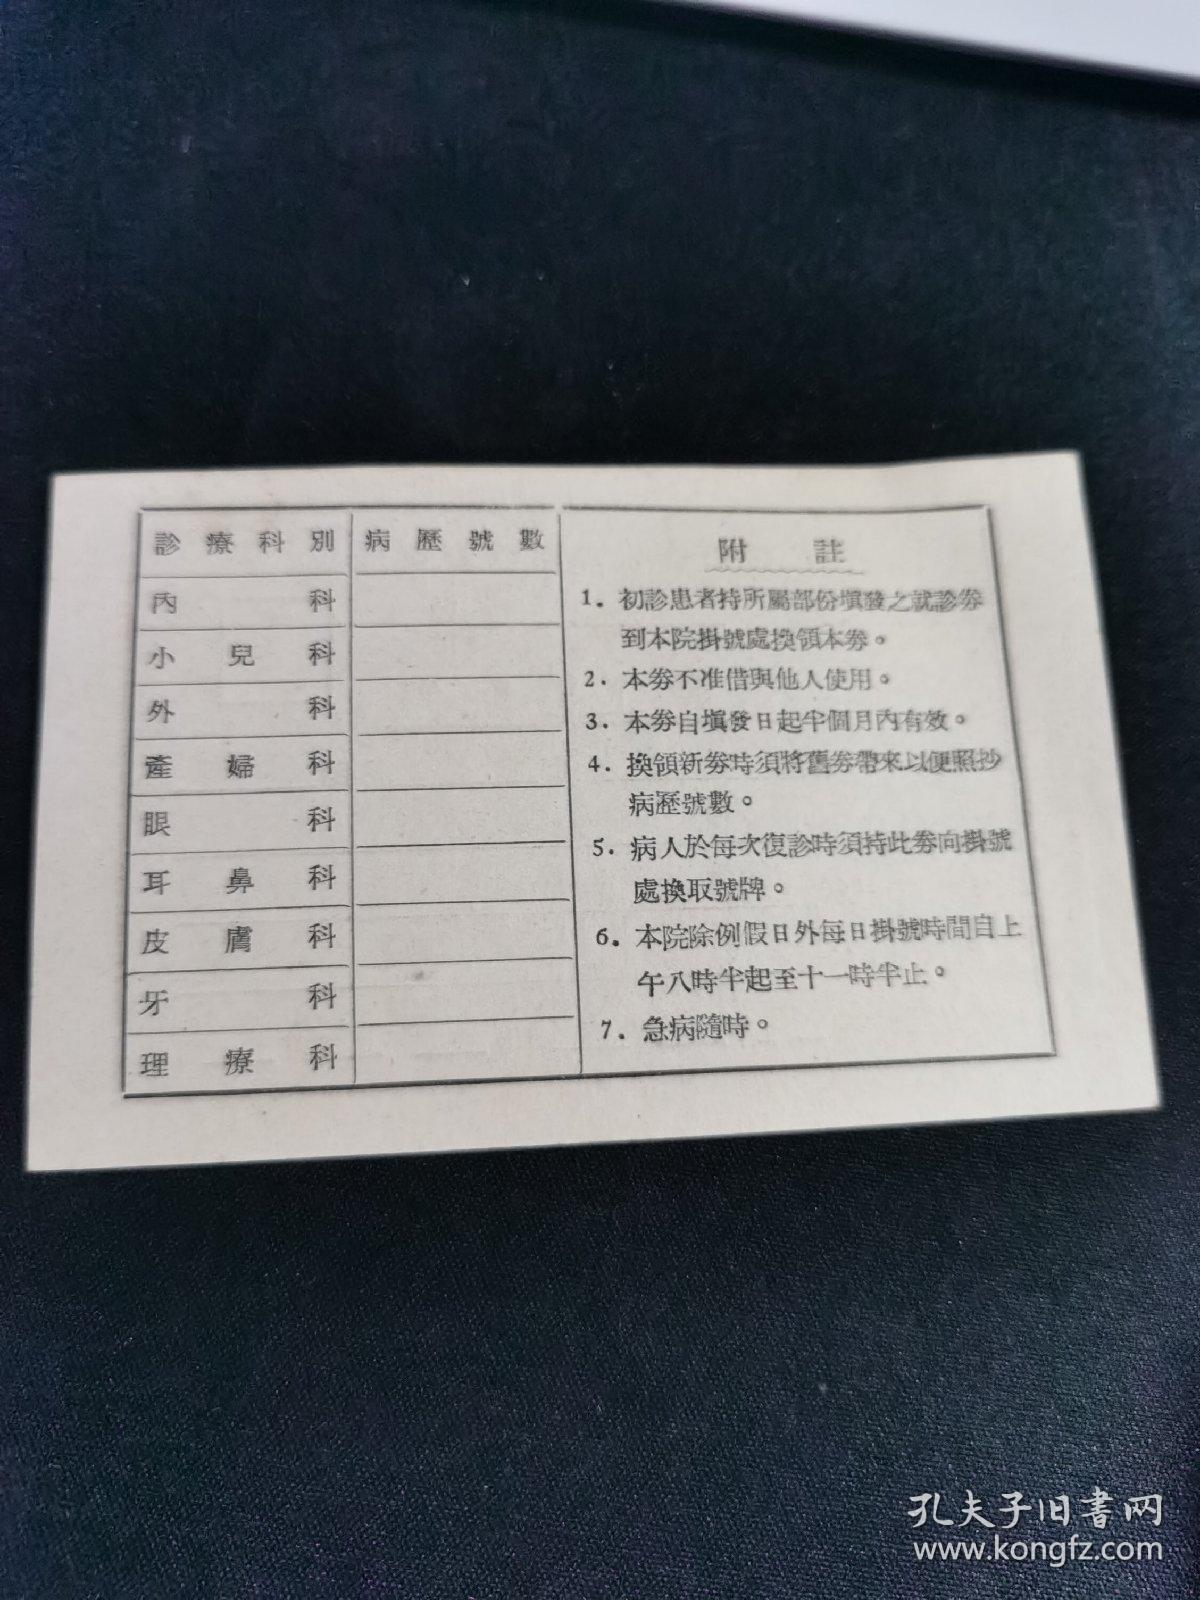 铁道部天津铁路管理局 职工诊察券 1954年